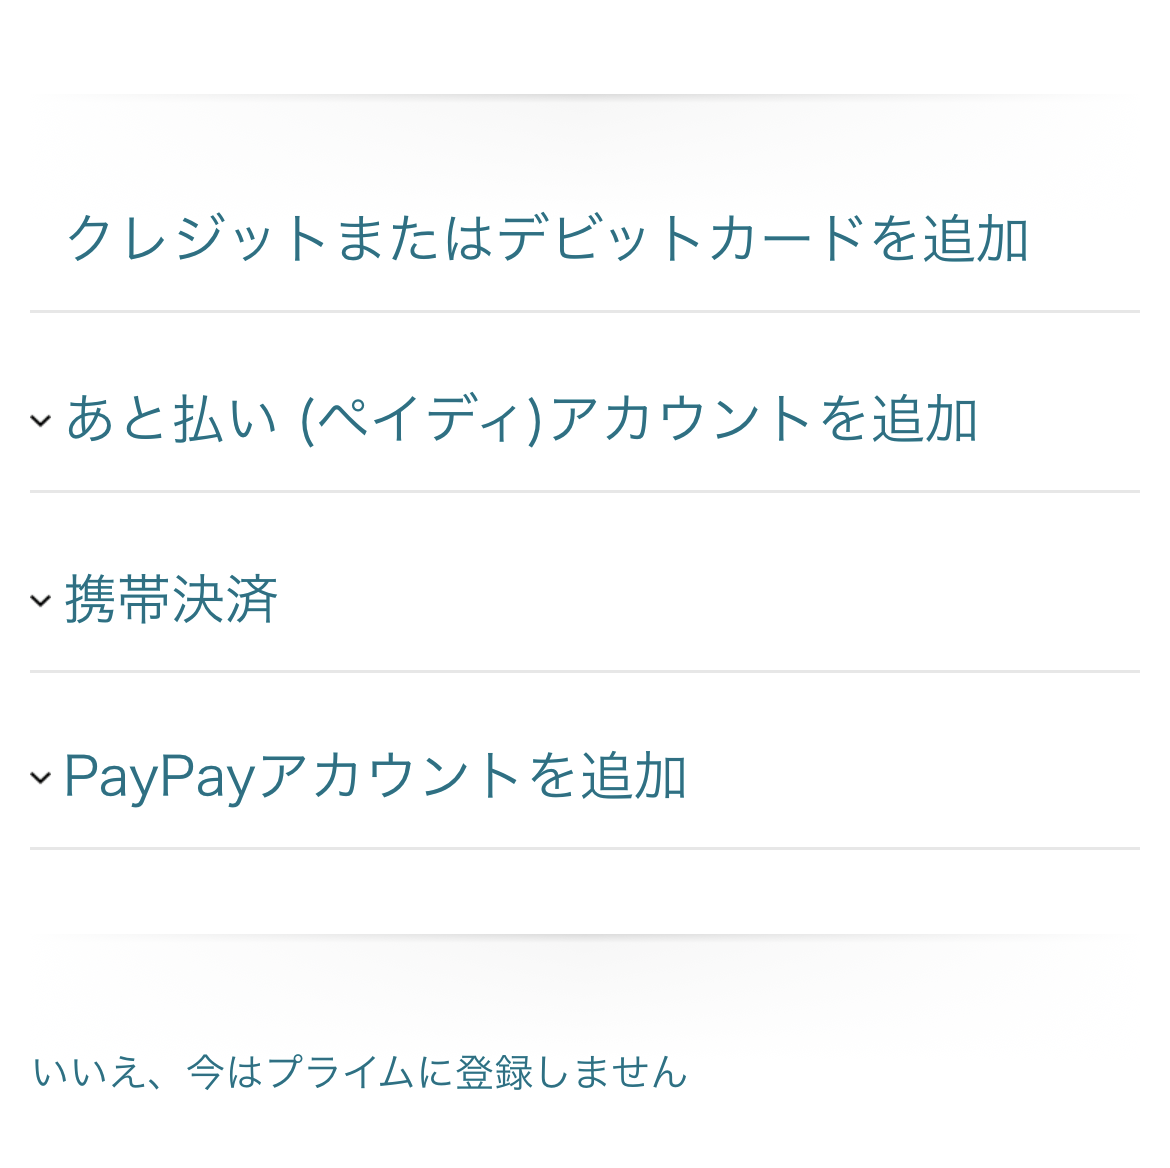 Cách đăng ký thành viên Amazon Prime tại Nhật 2022